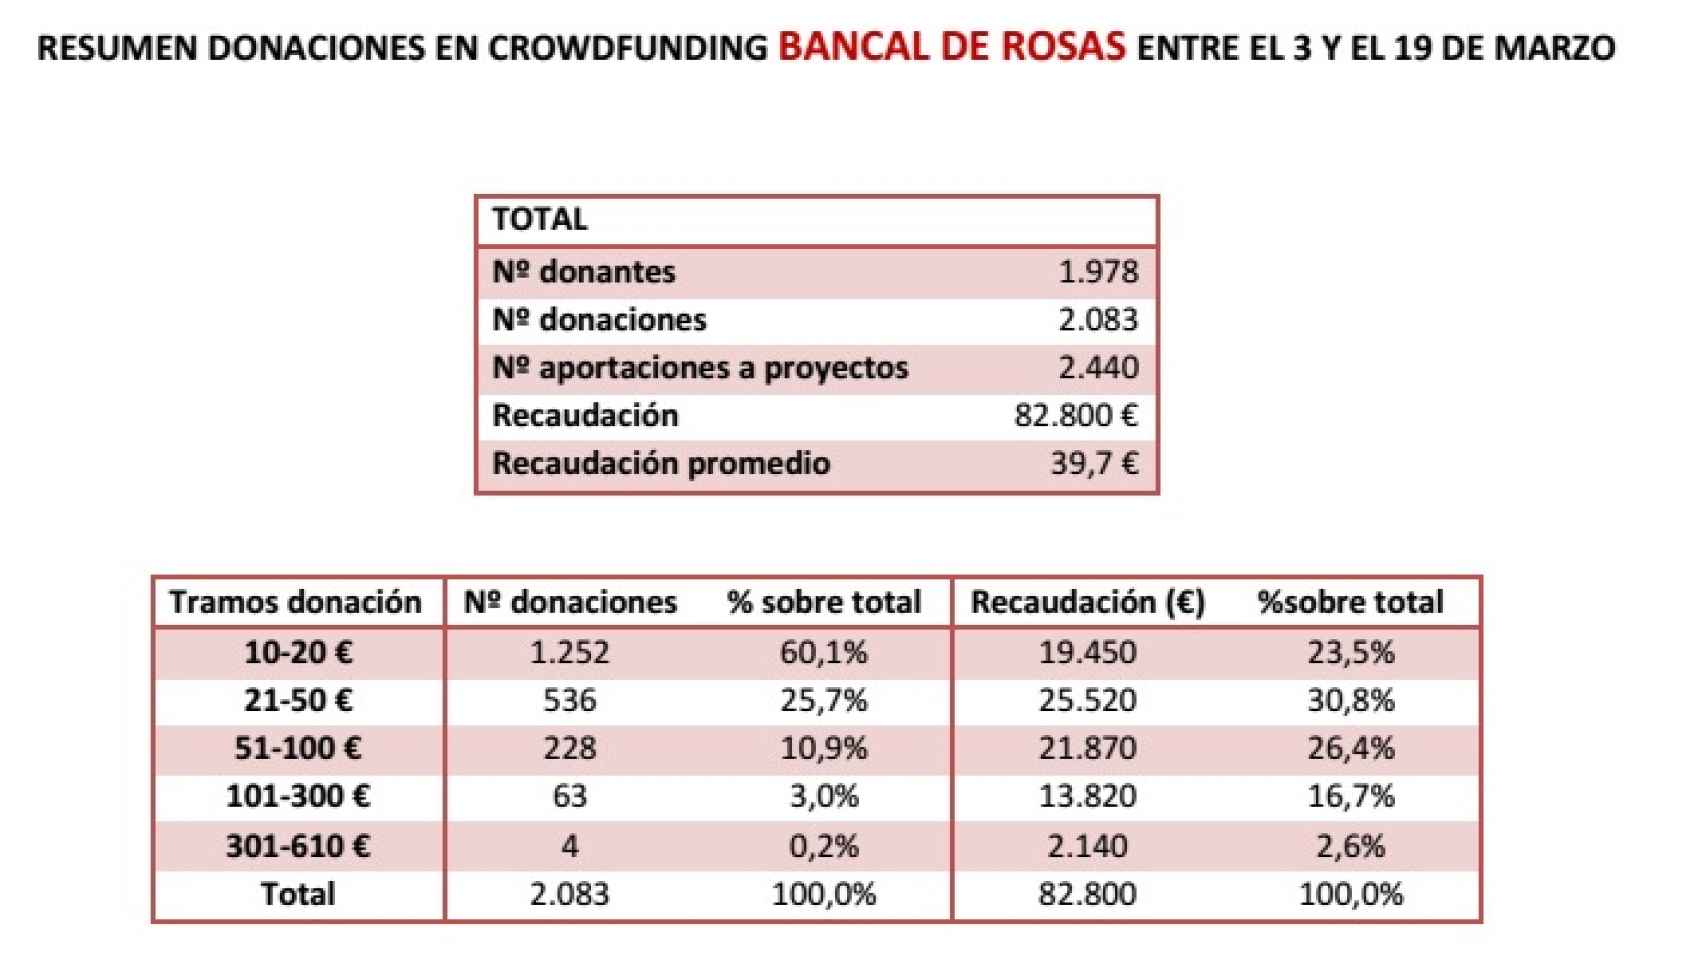 Principales datos del 'crowdfunding' de la asociación Bancal de Rosas de Pedro Sánchez.